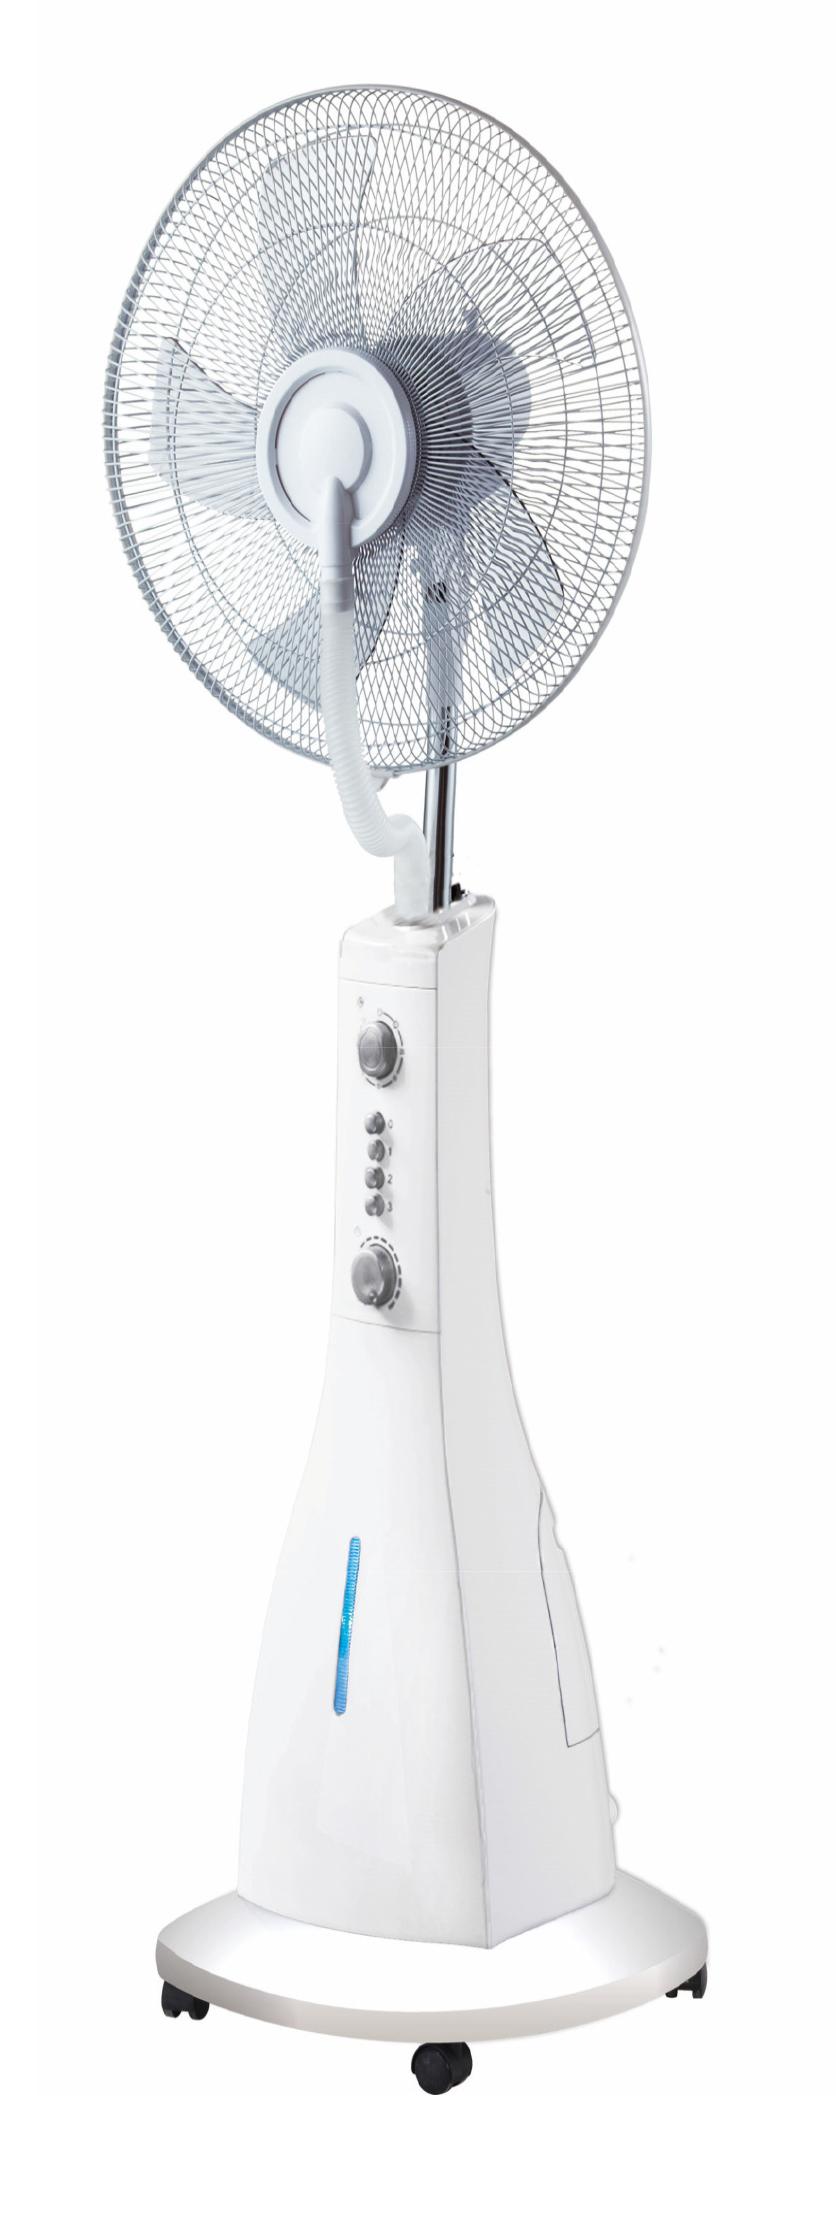 GLOBO Ventilator sa ovlaživačem Riccardo 0426 beli